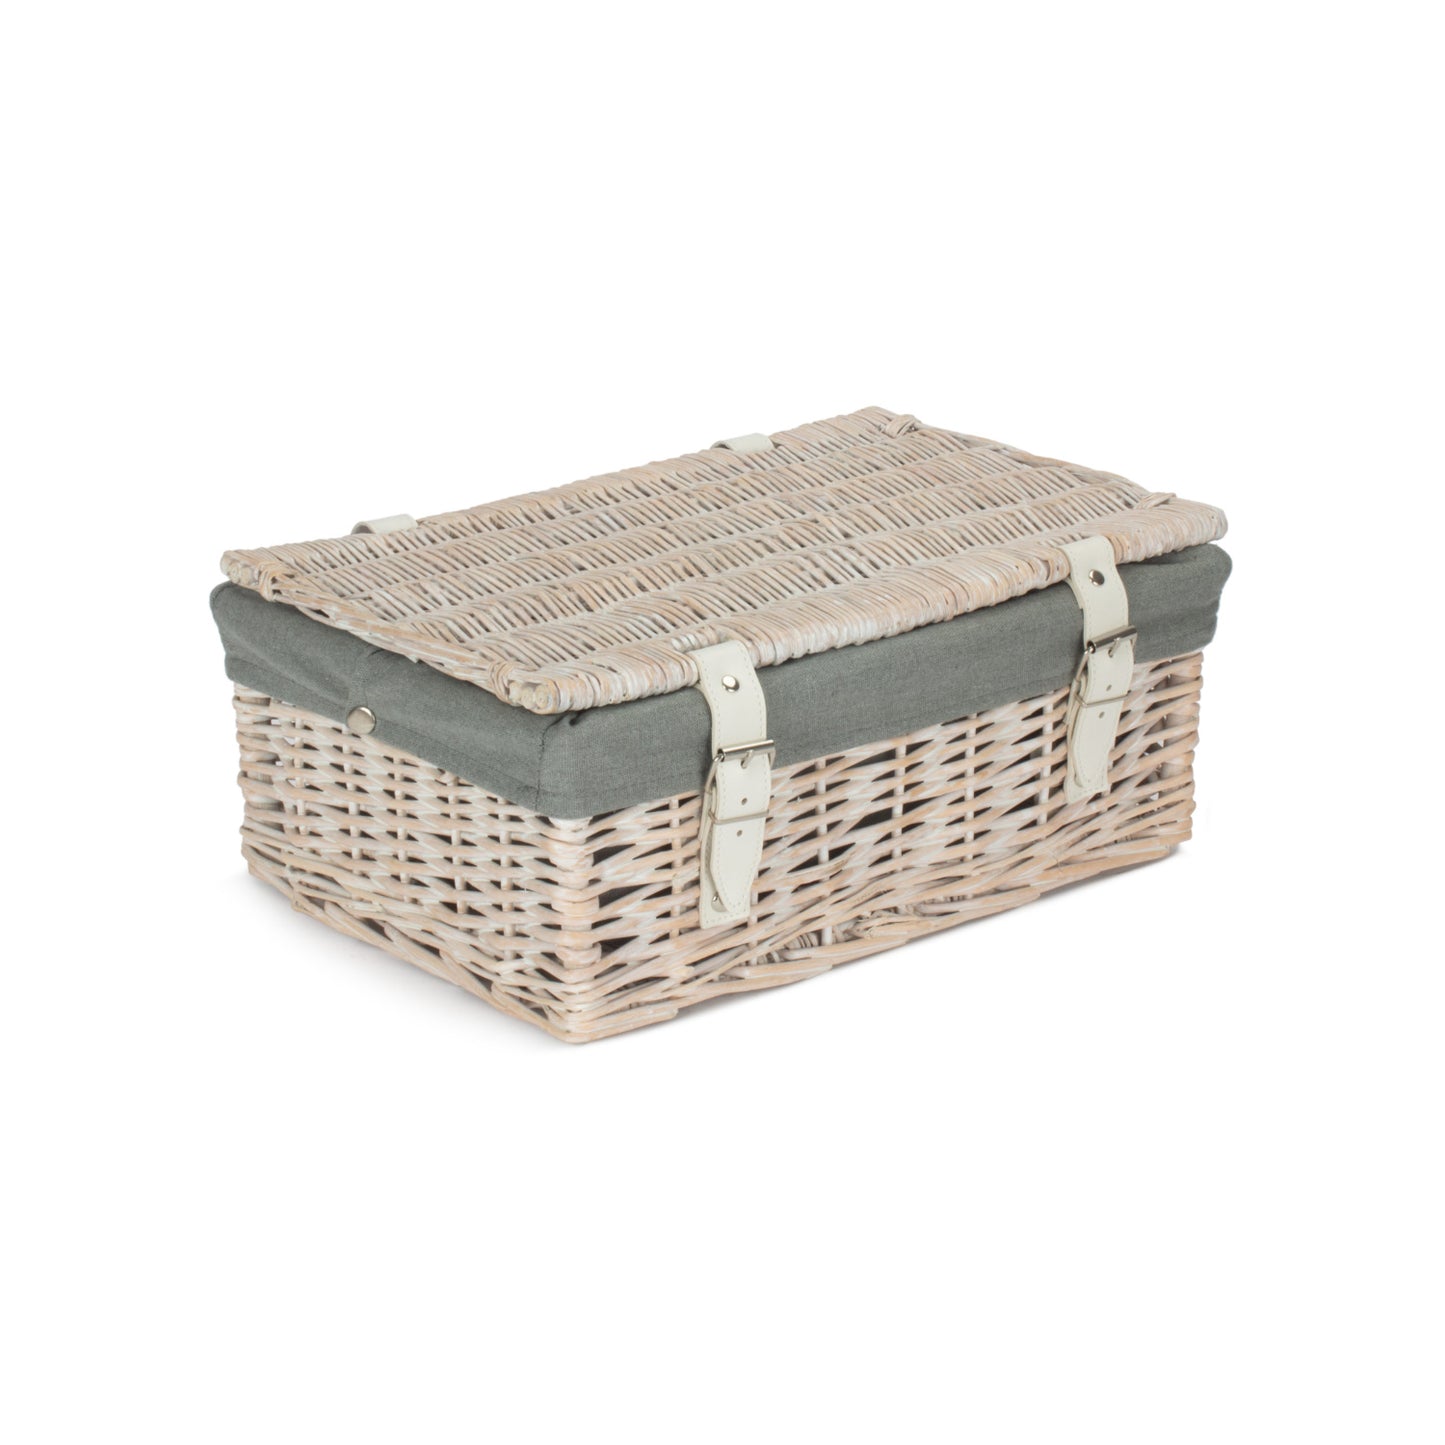 14 Inch Empty Wicker Hamper Basket - White Wash - Grey Sage Lining